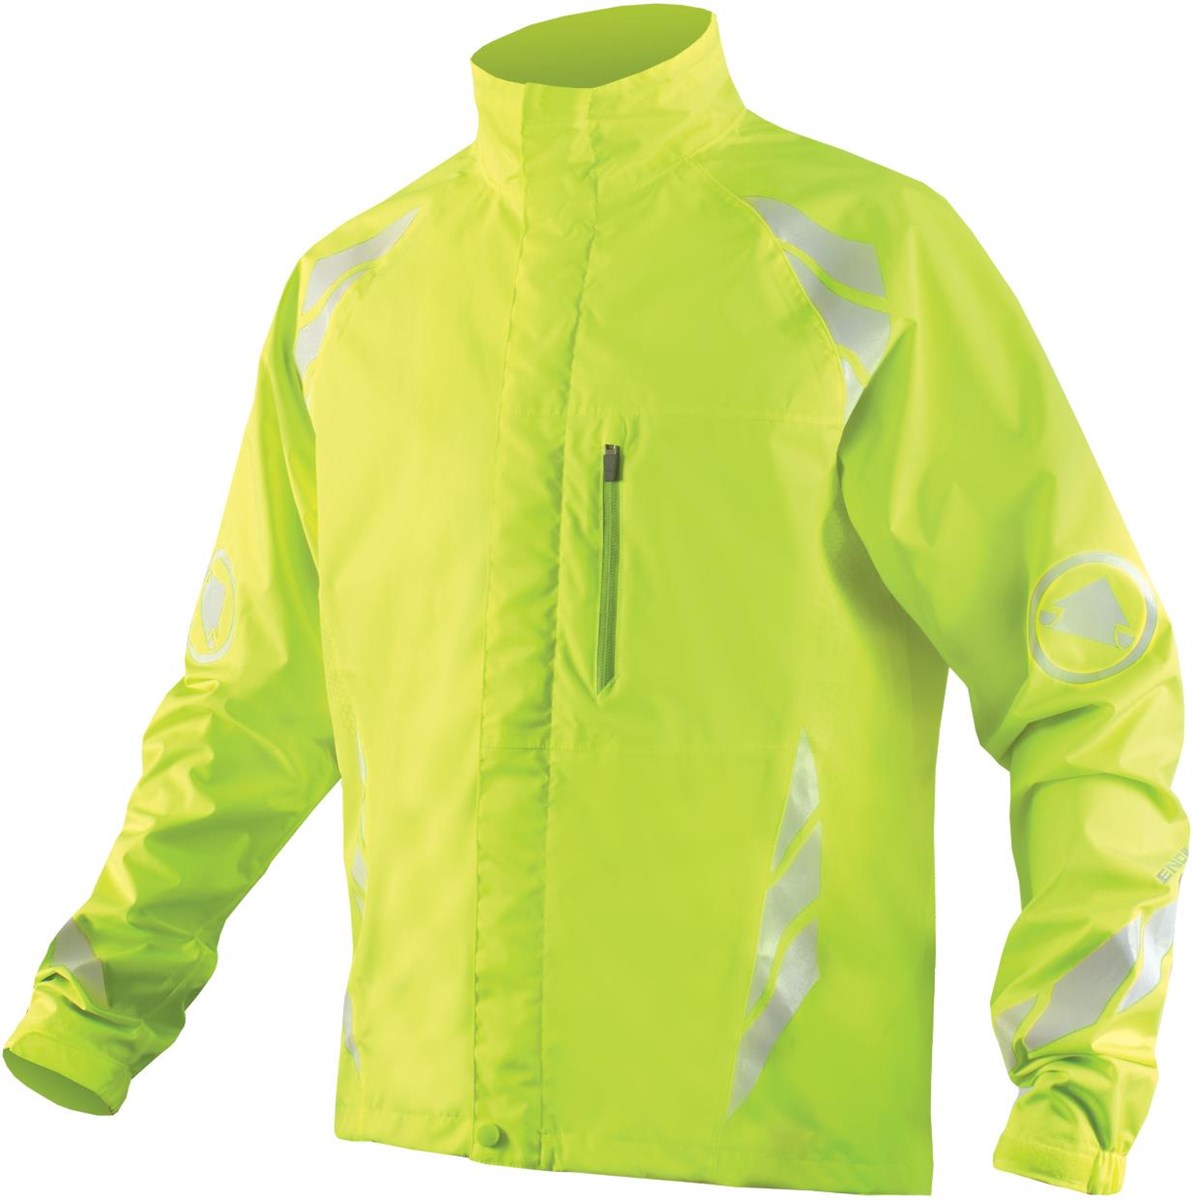 Endura Luminite DL Cycling Jacket With New Luminite II LED product image